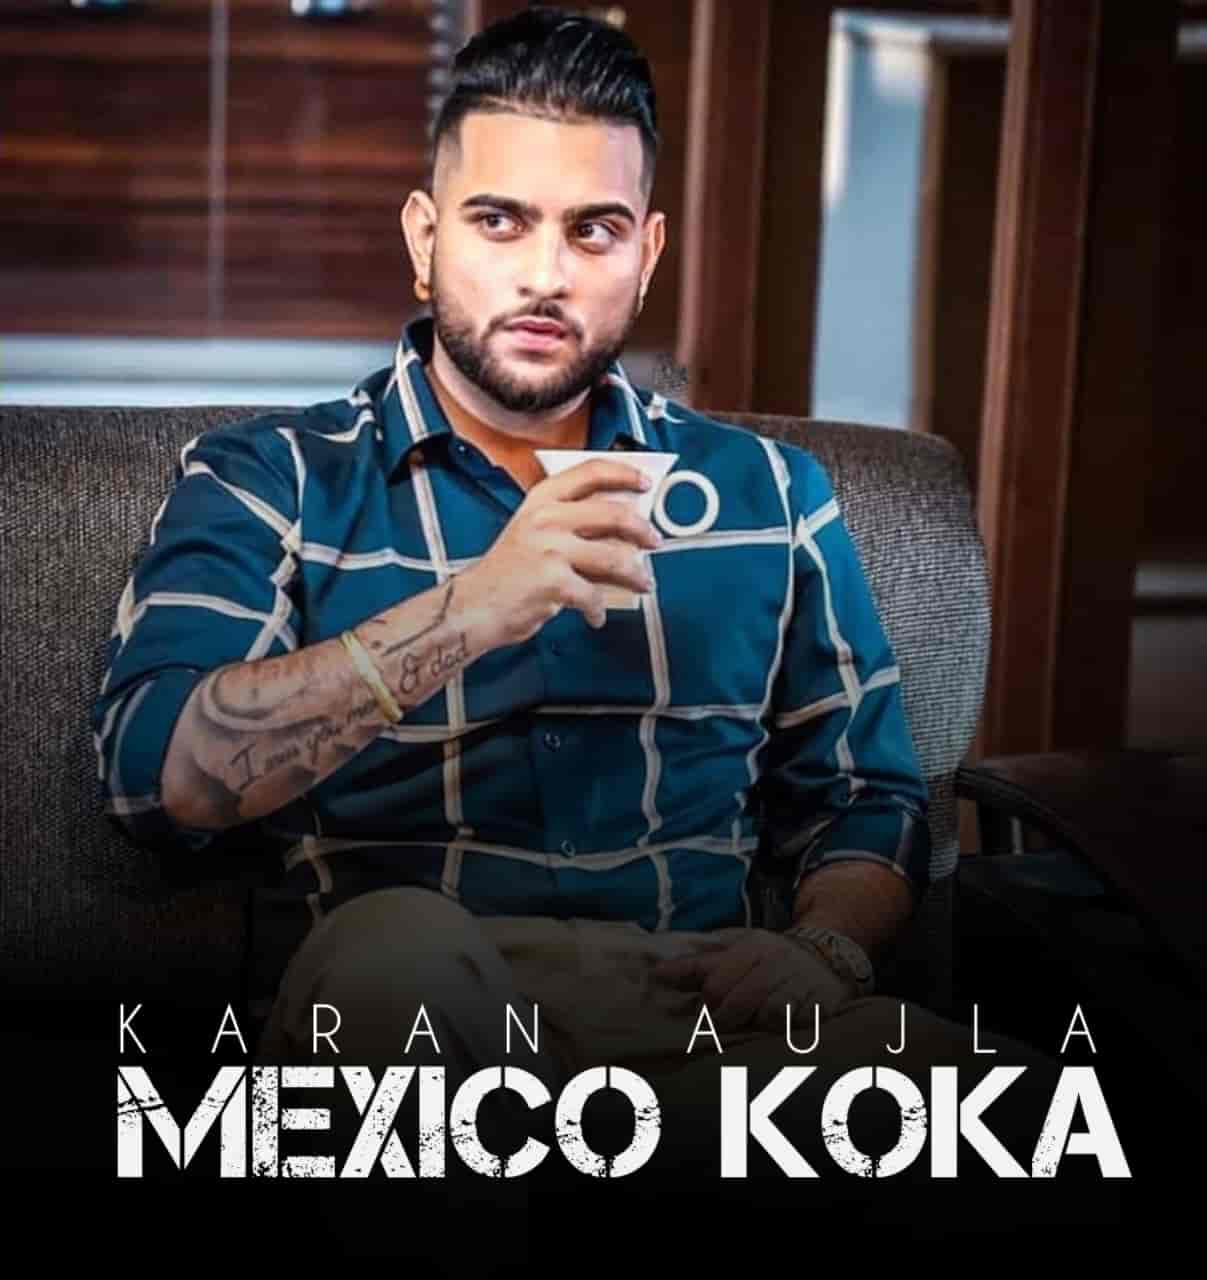 Mexico Koka Punjabi Song Image Features Karan Aujla